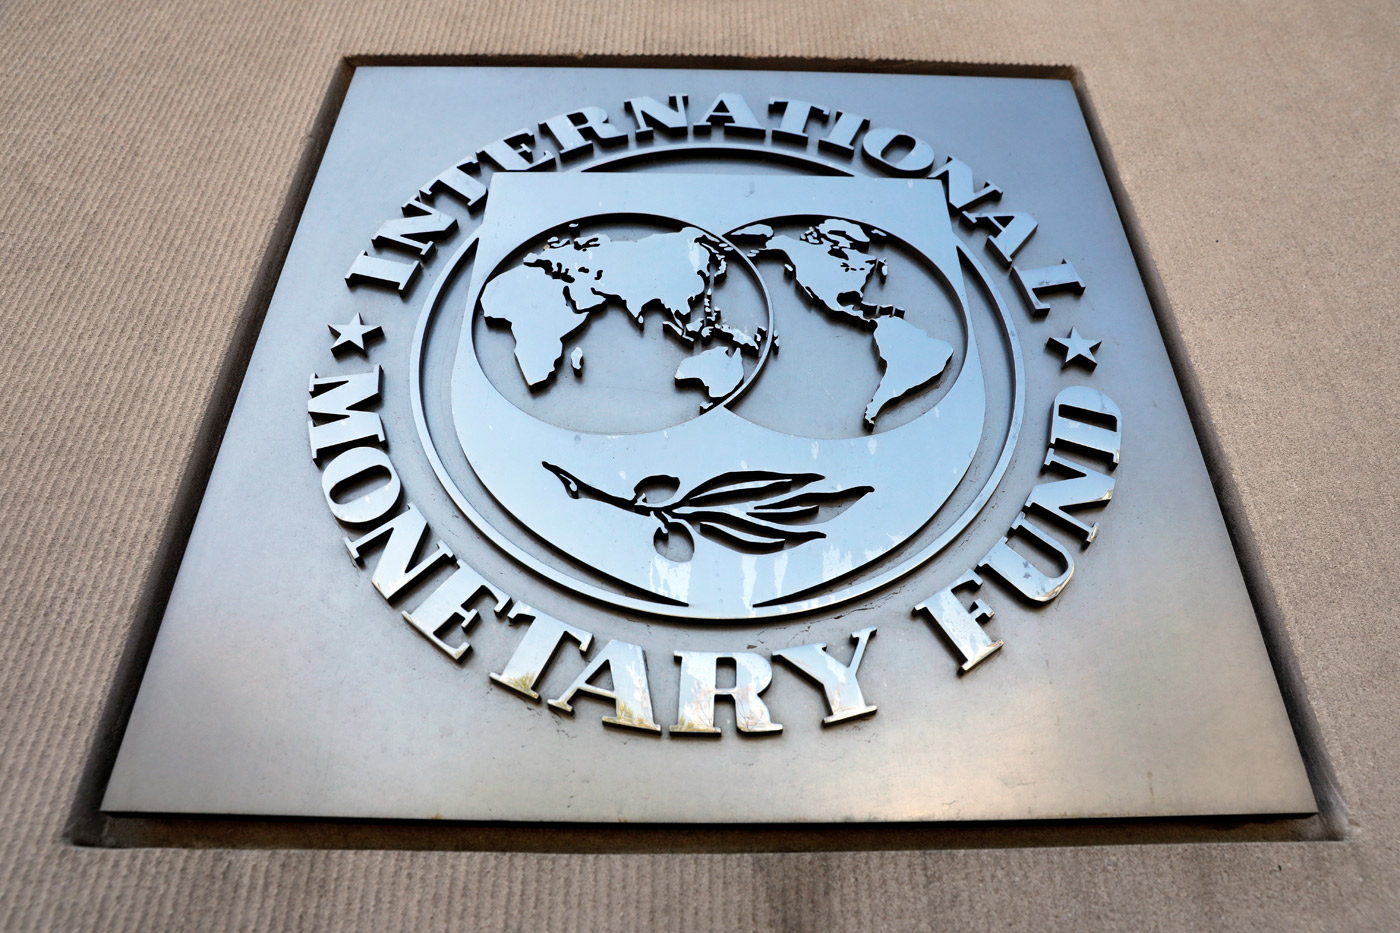 El FMI habría amenazado con sanciones a Venezuela si no publica cifras económicas